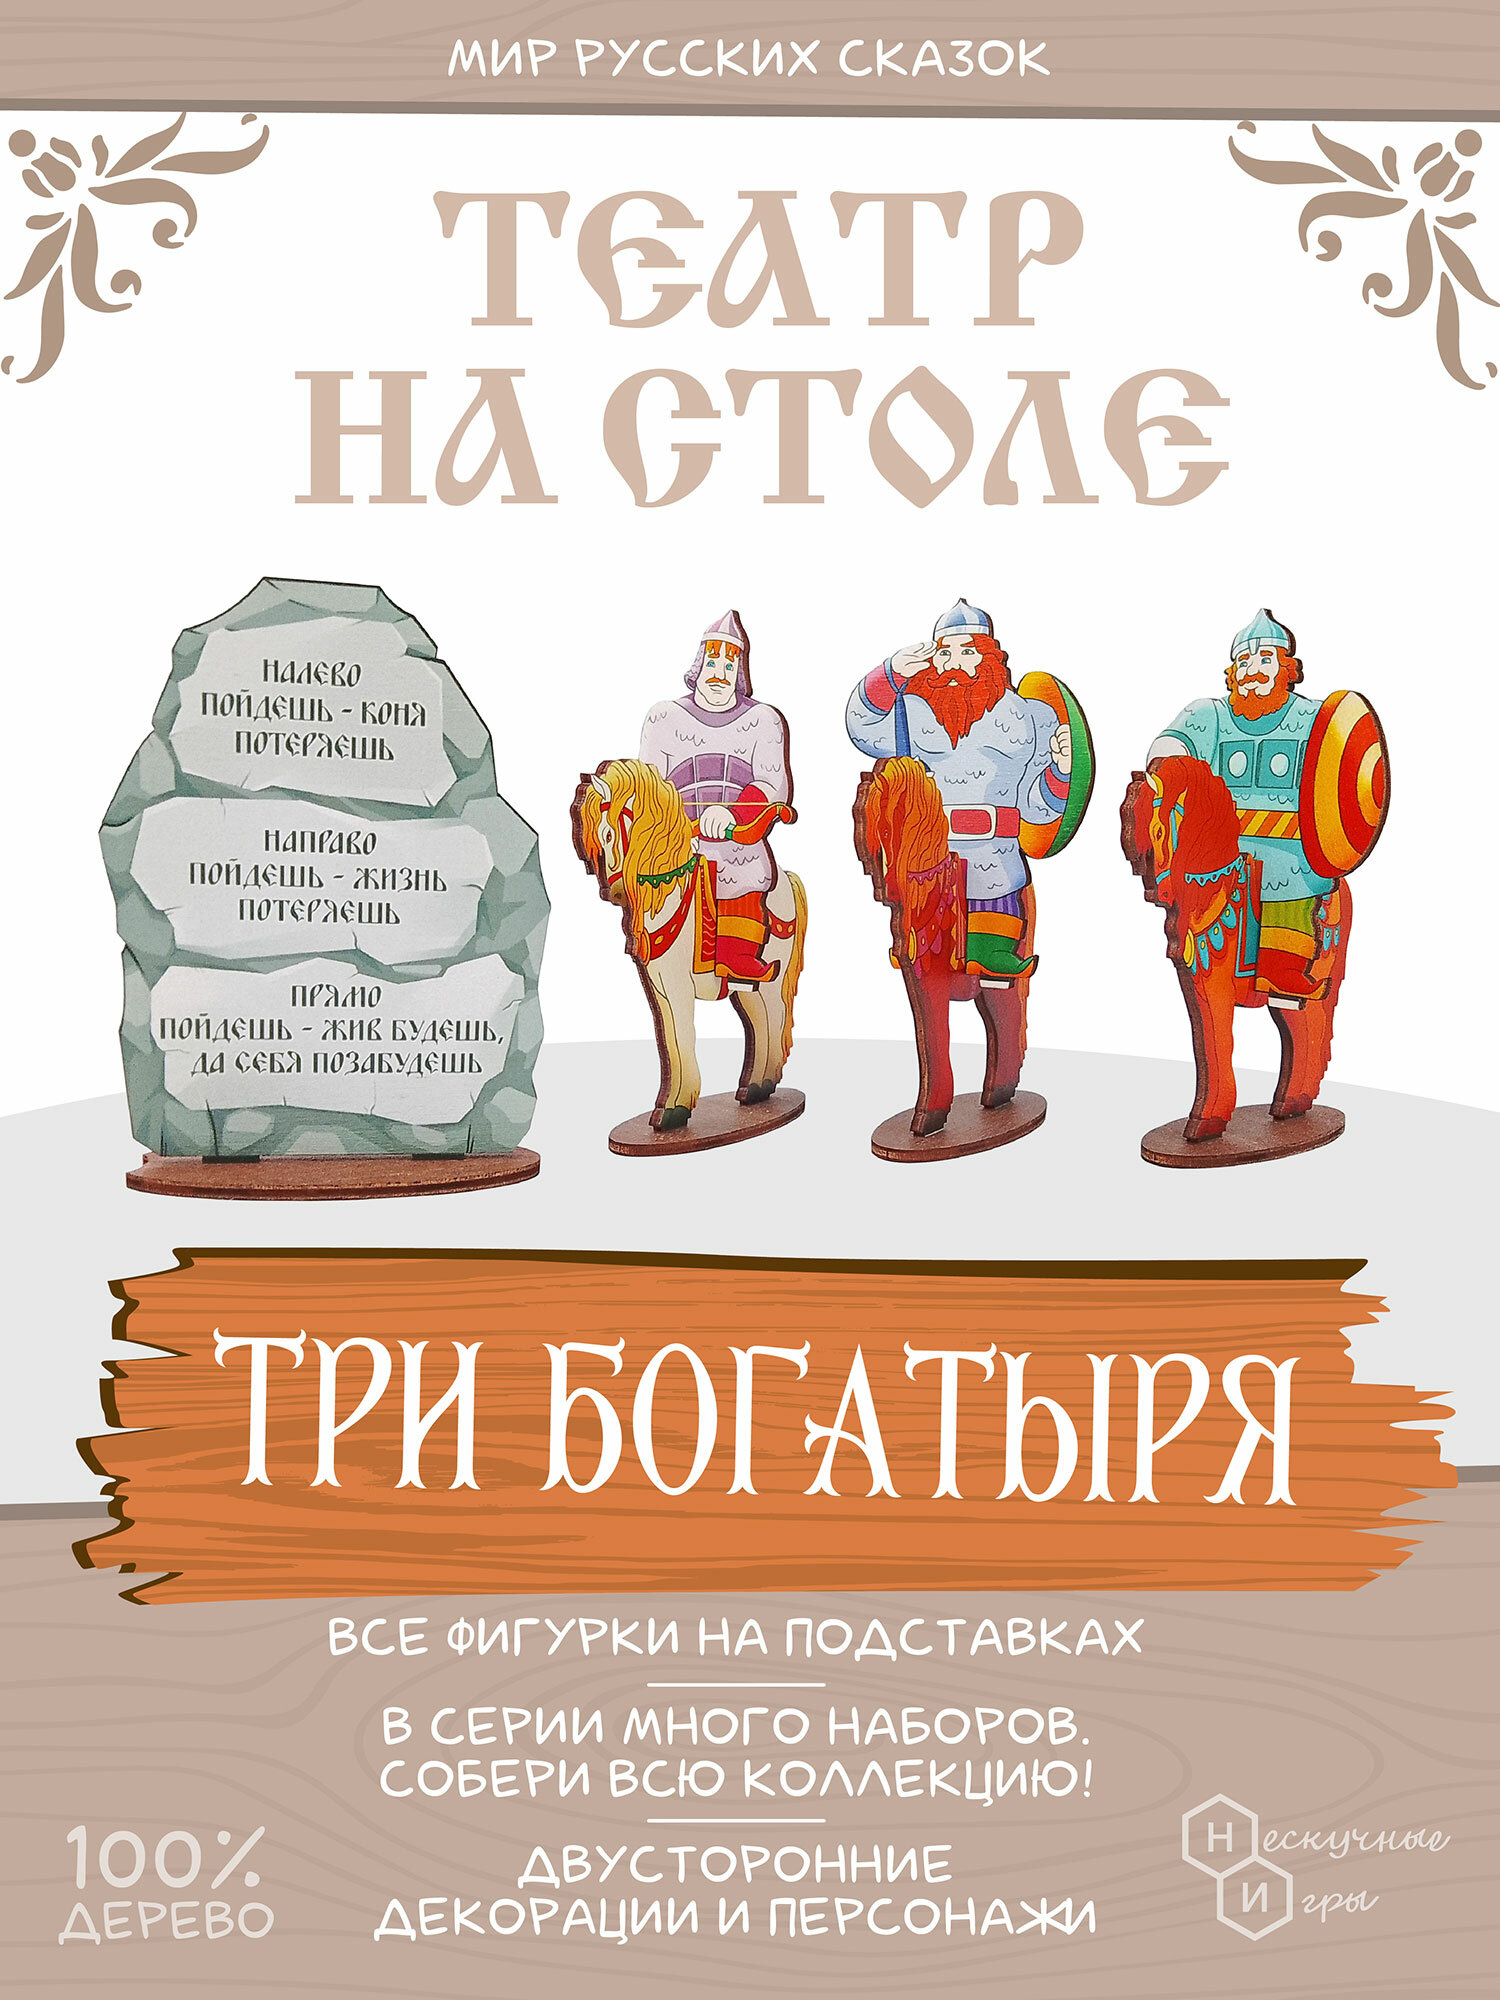 Мир русских сказок "Три богатыря" арт.8091 /35